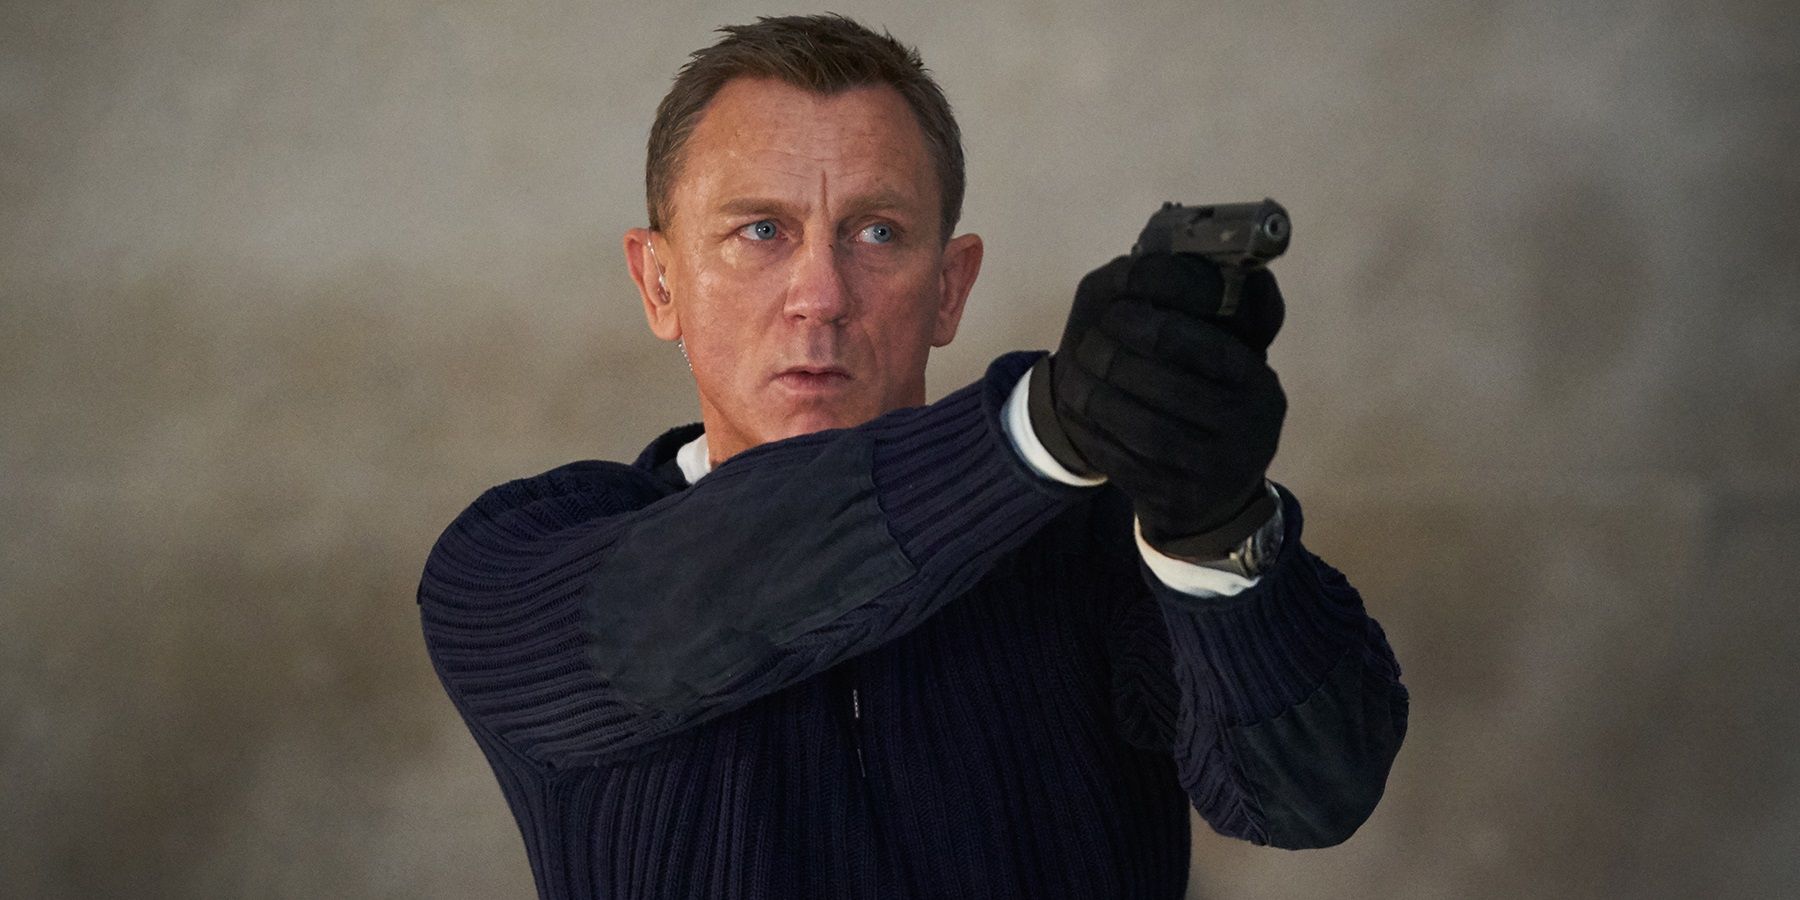 Daniel Craigin Run As 007 tulee yhdeksi kaikkien aikojen parhaista